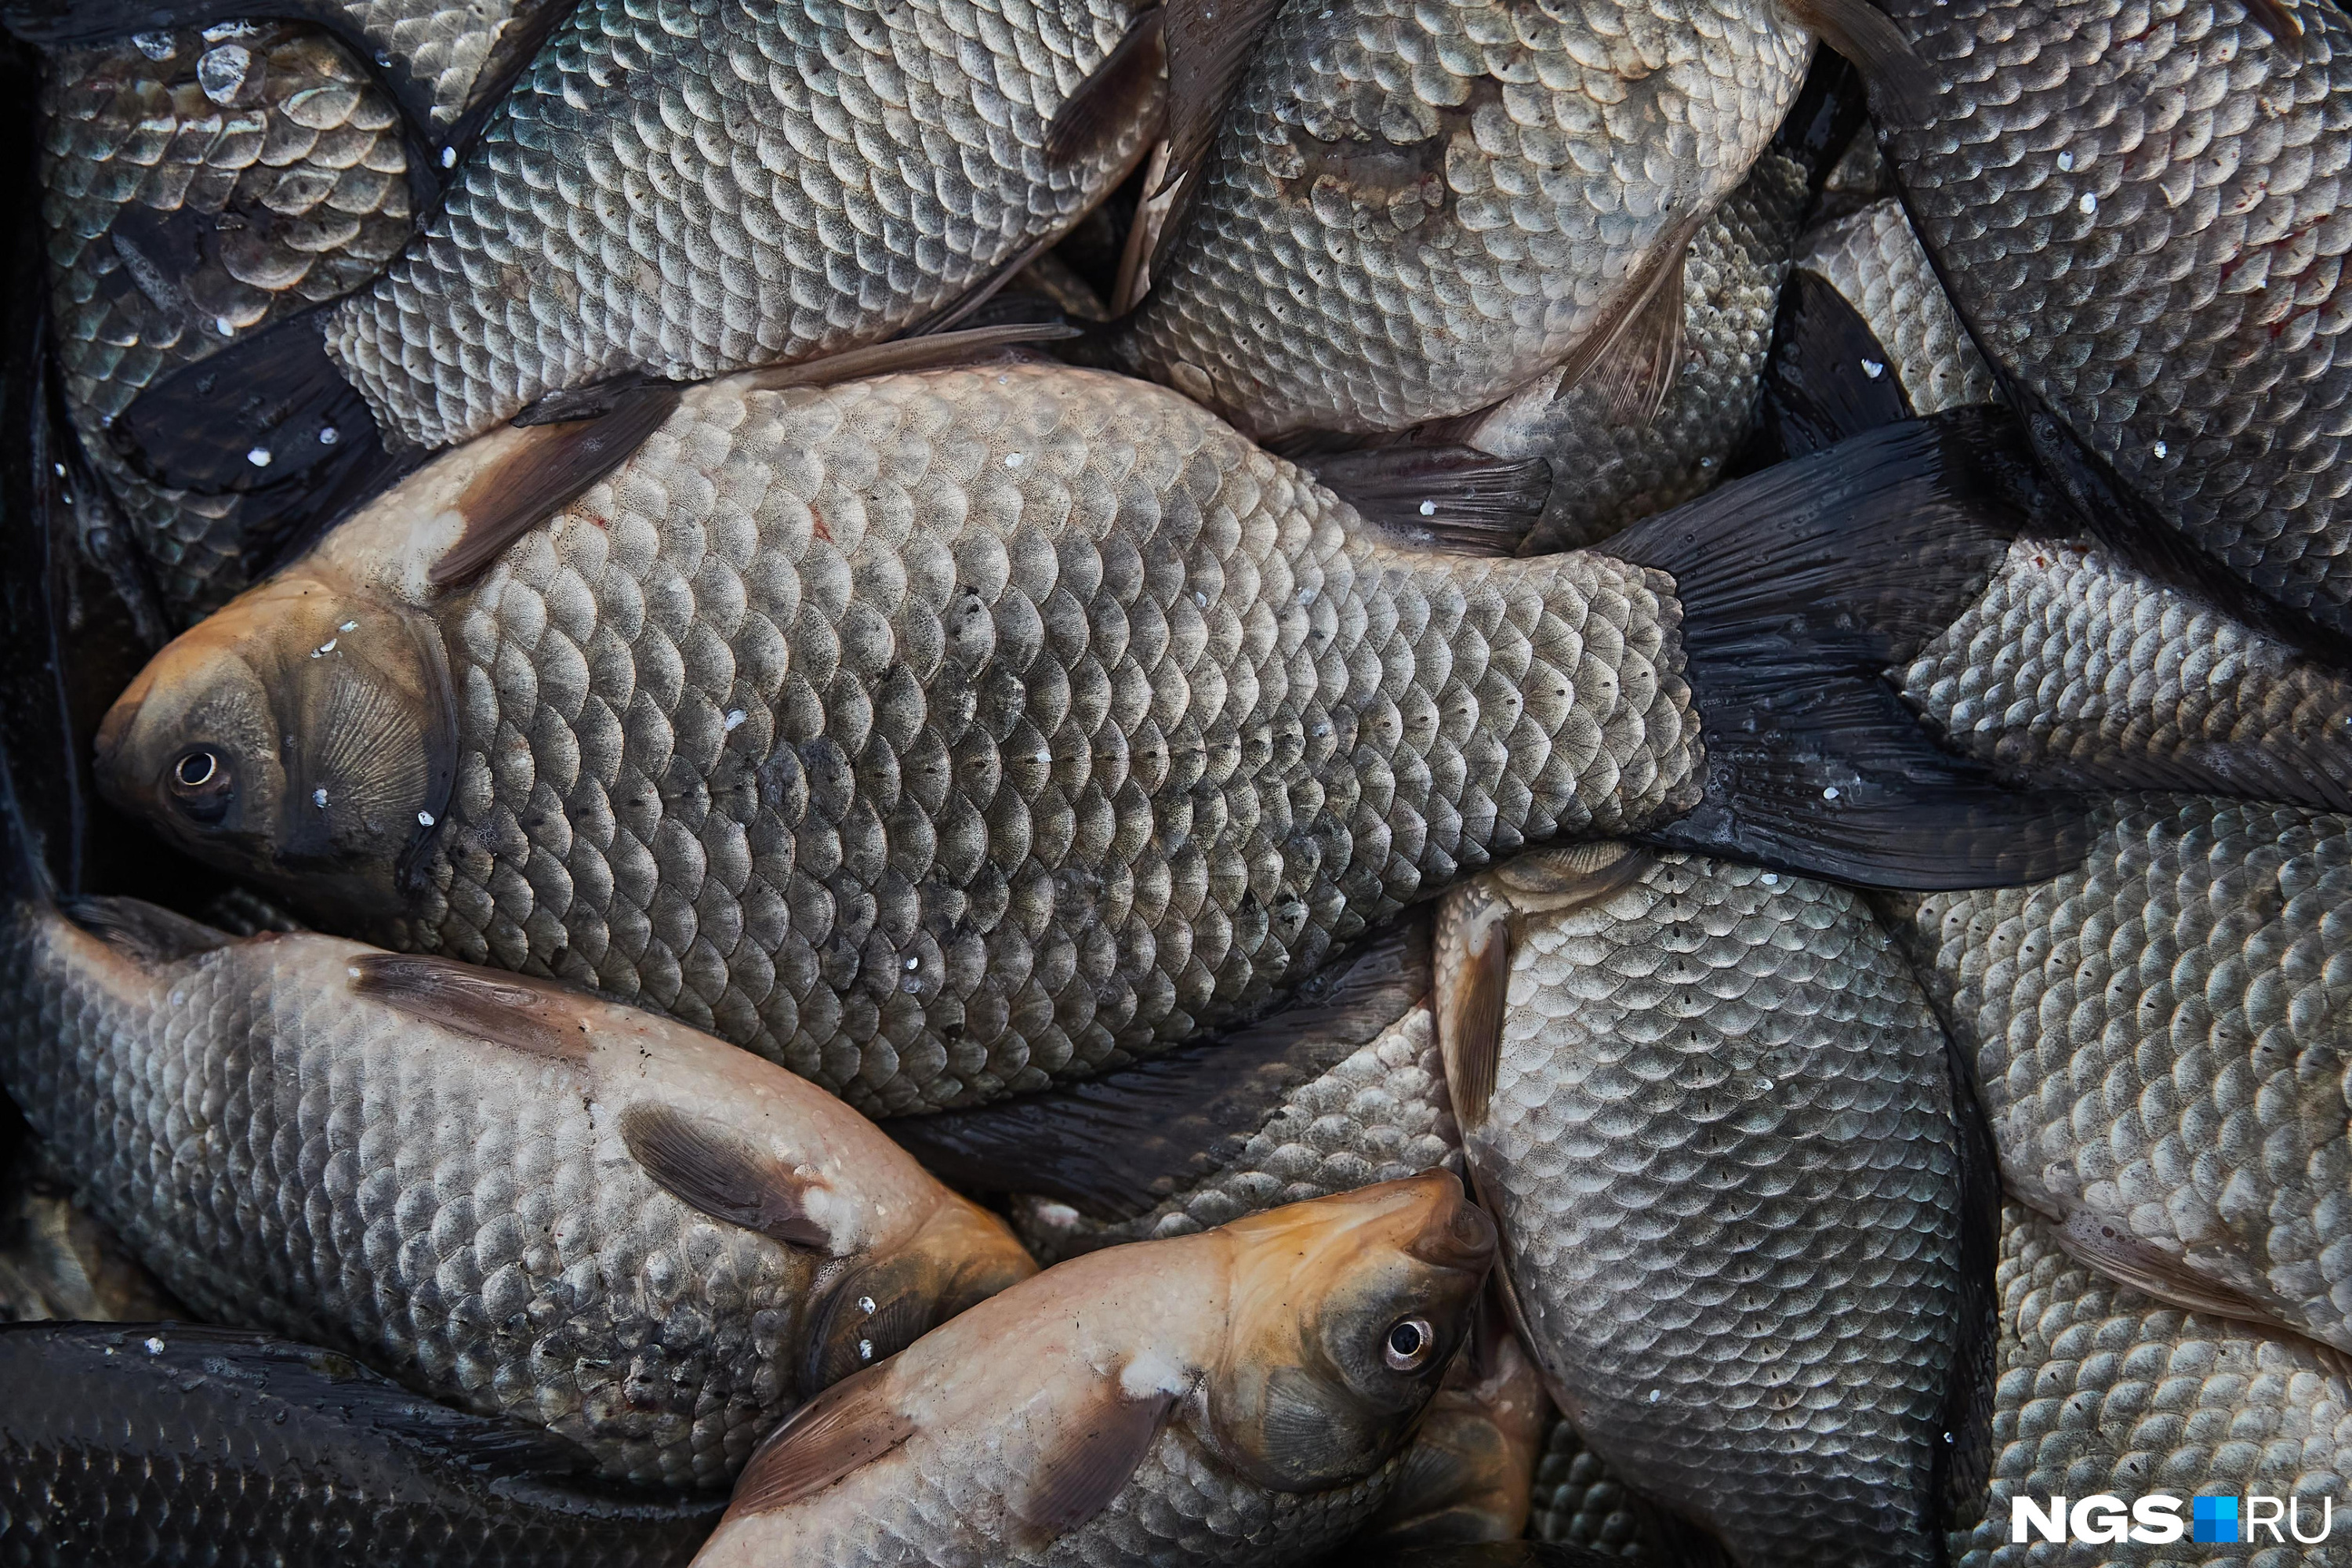 Неизвестные передали тухлую рыбу с вещами для нуждающихся граждан в Чите